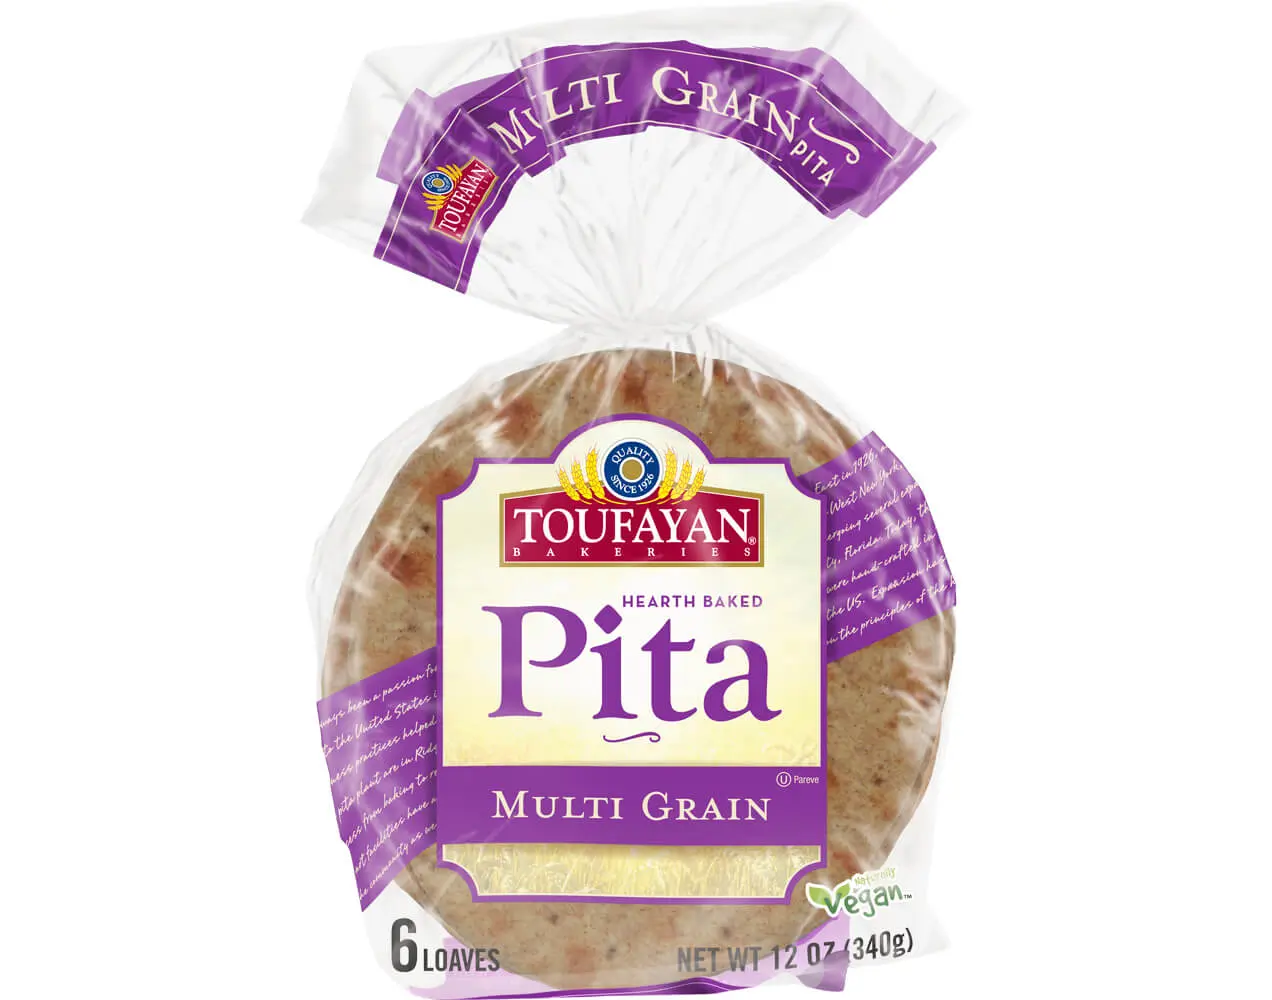 Multi Grain Pita